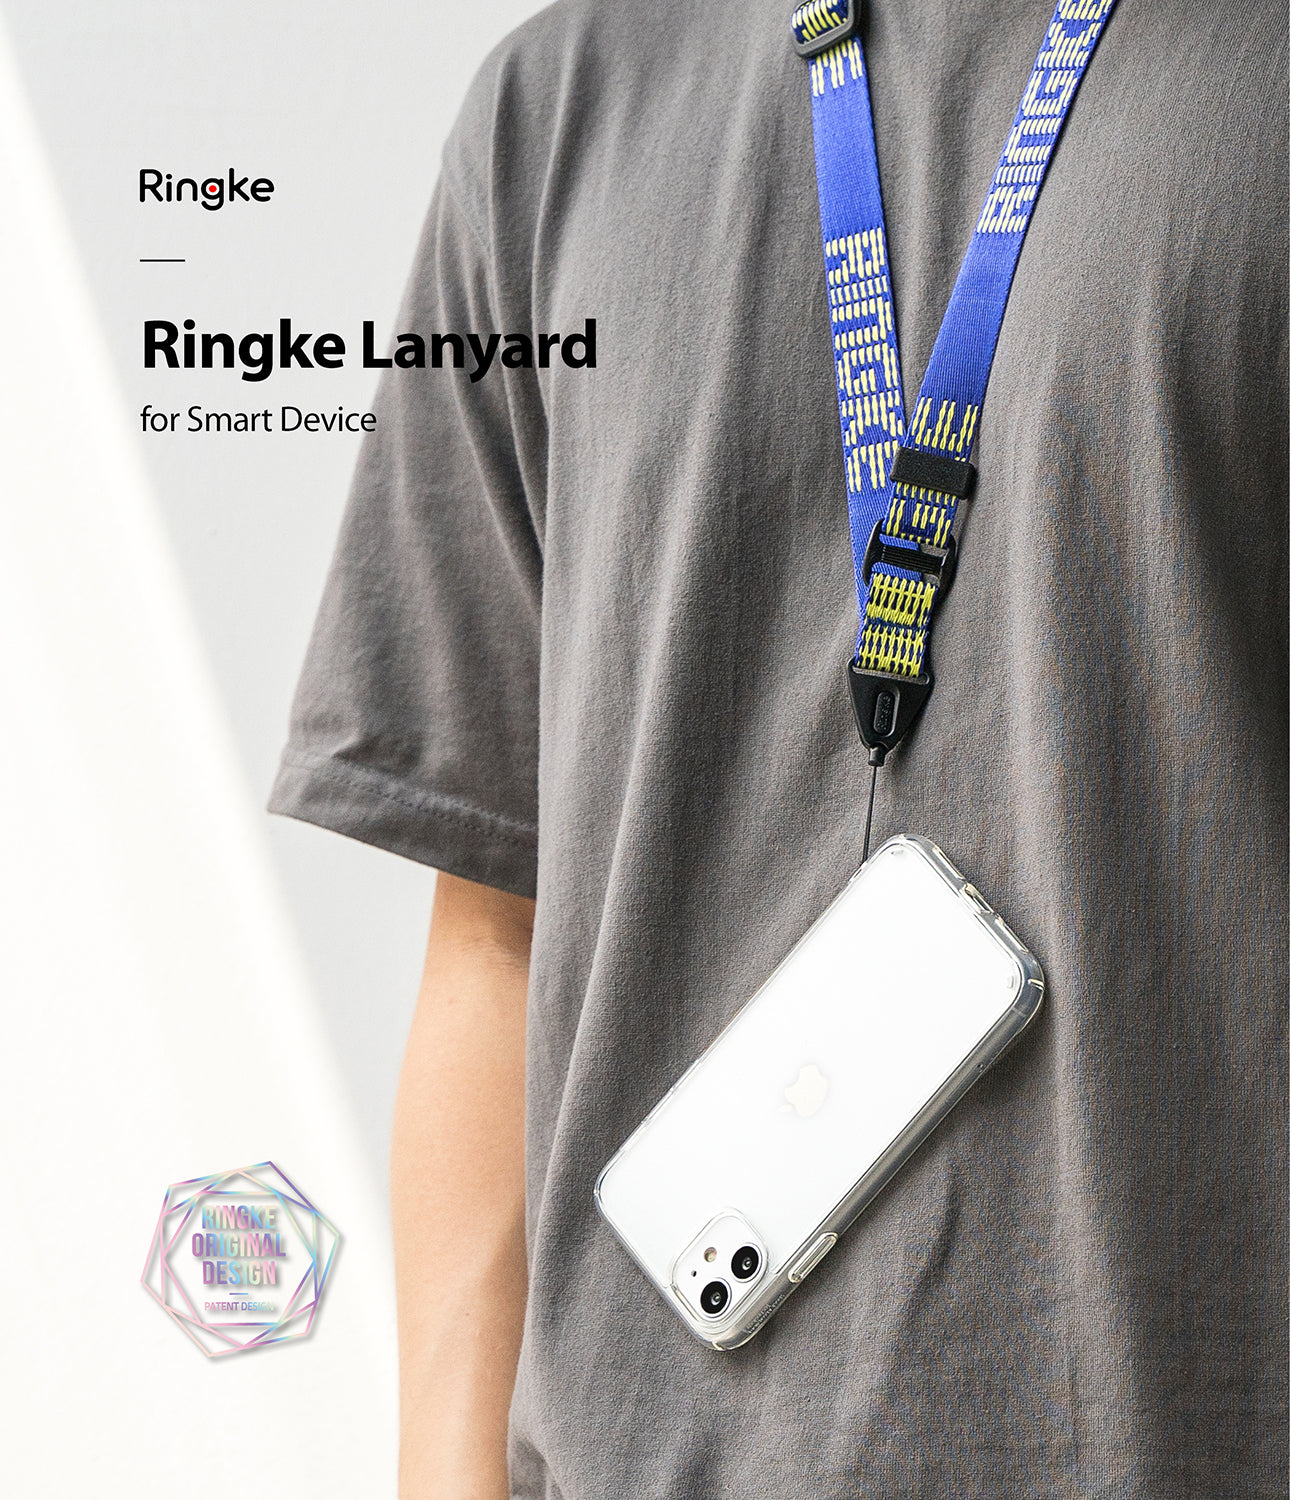 ringke lanyard design neck strap